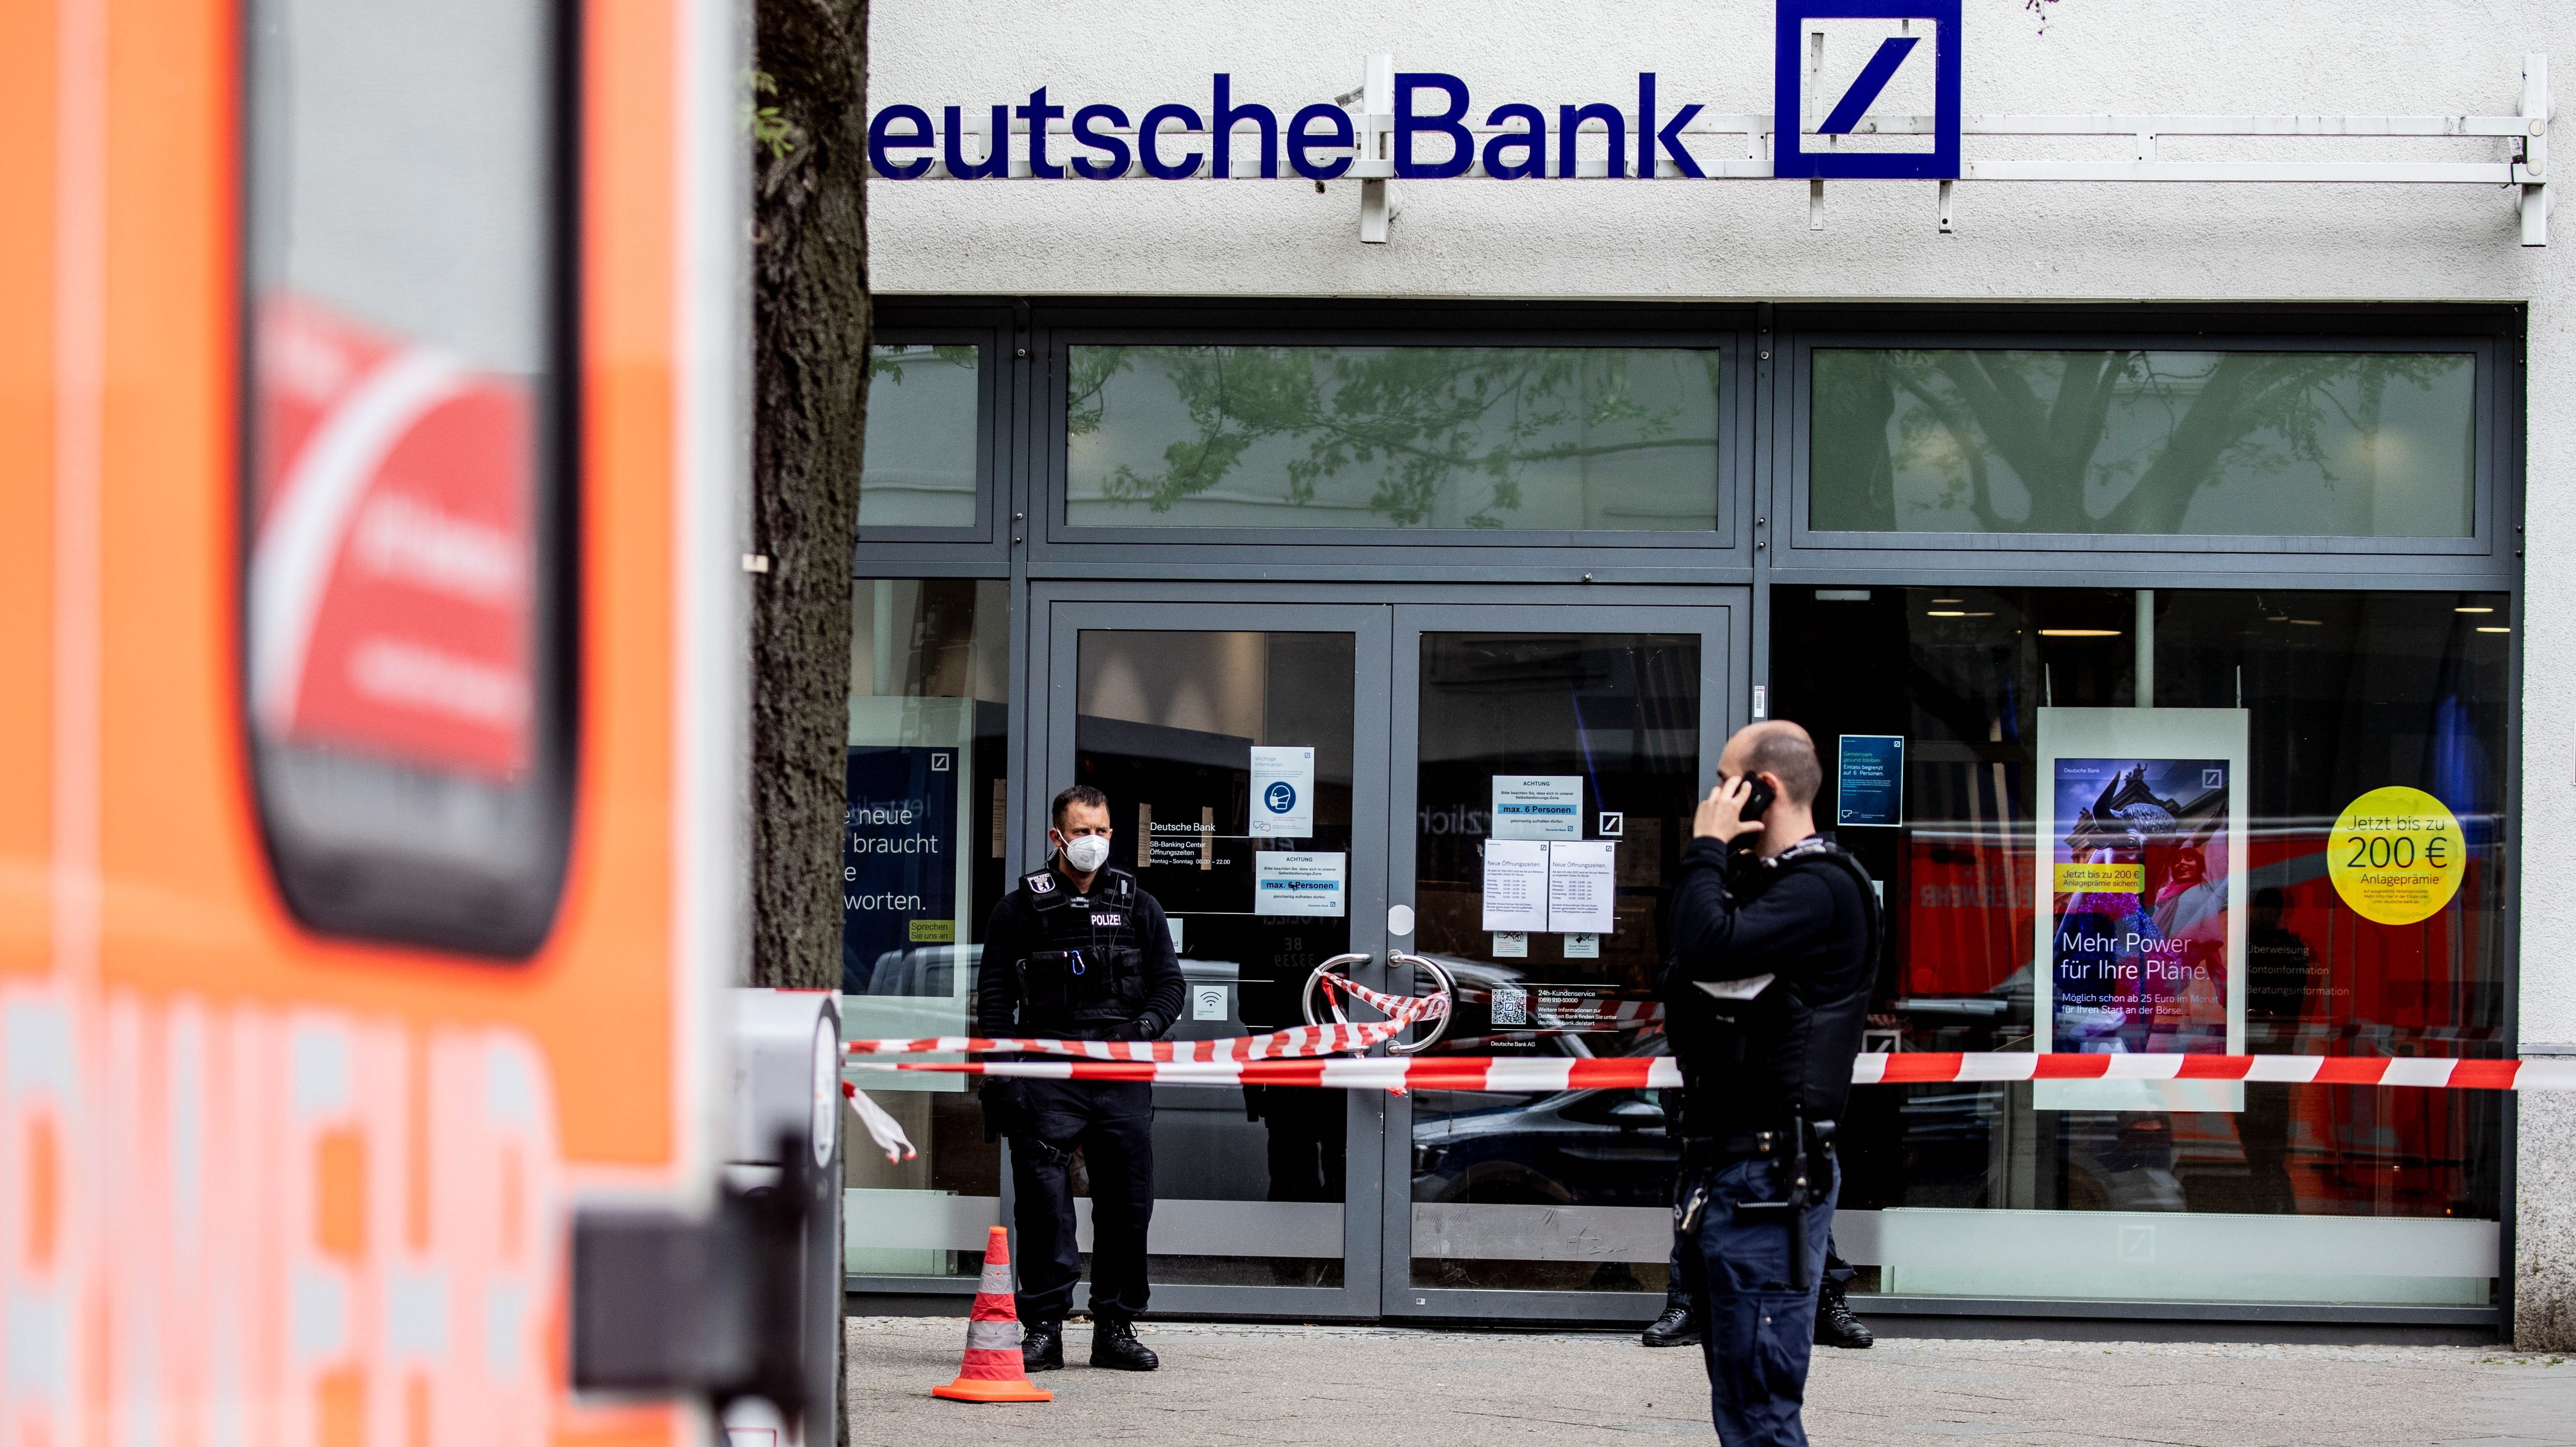 Németország: Egyes bankokba már nem mehetnek be az oltatlanok, marad az automata